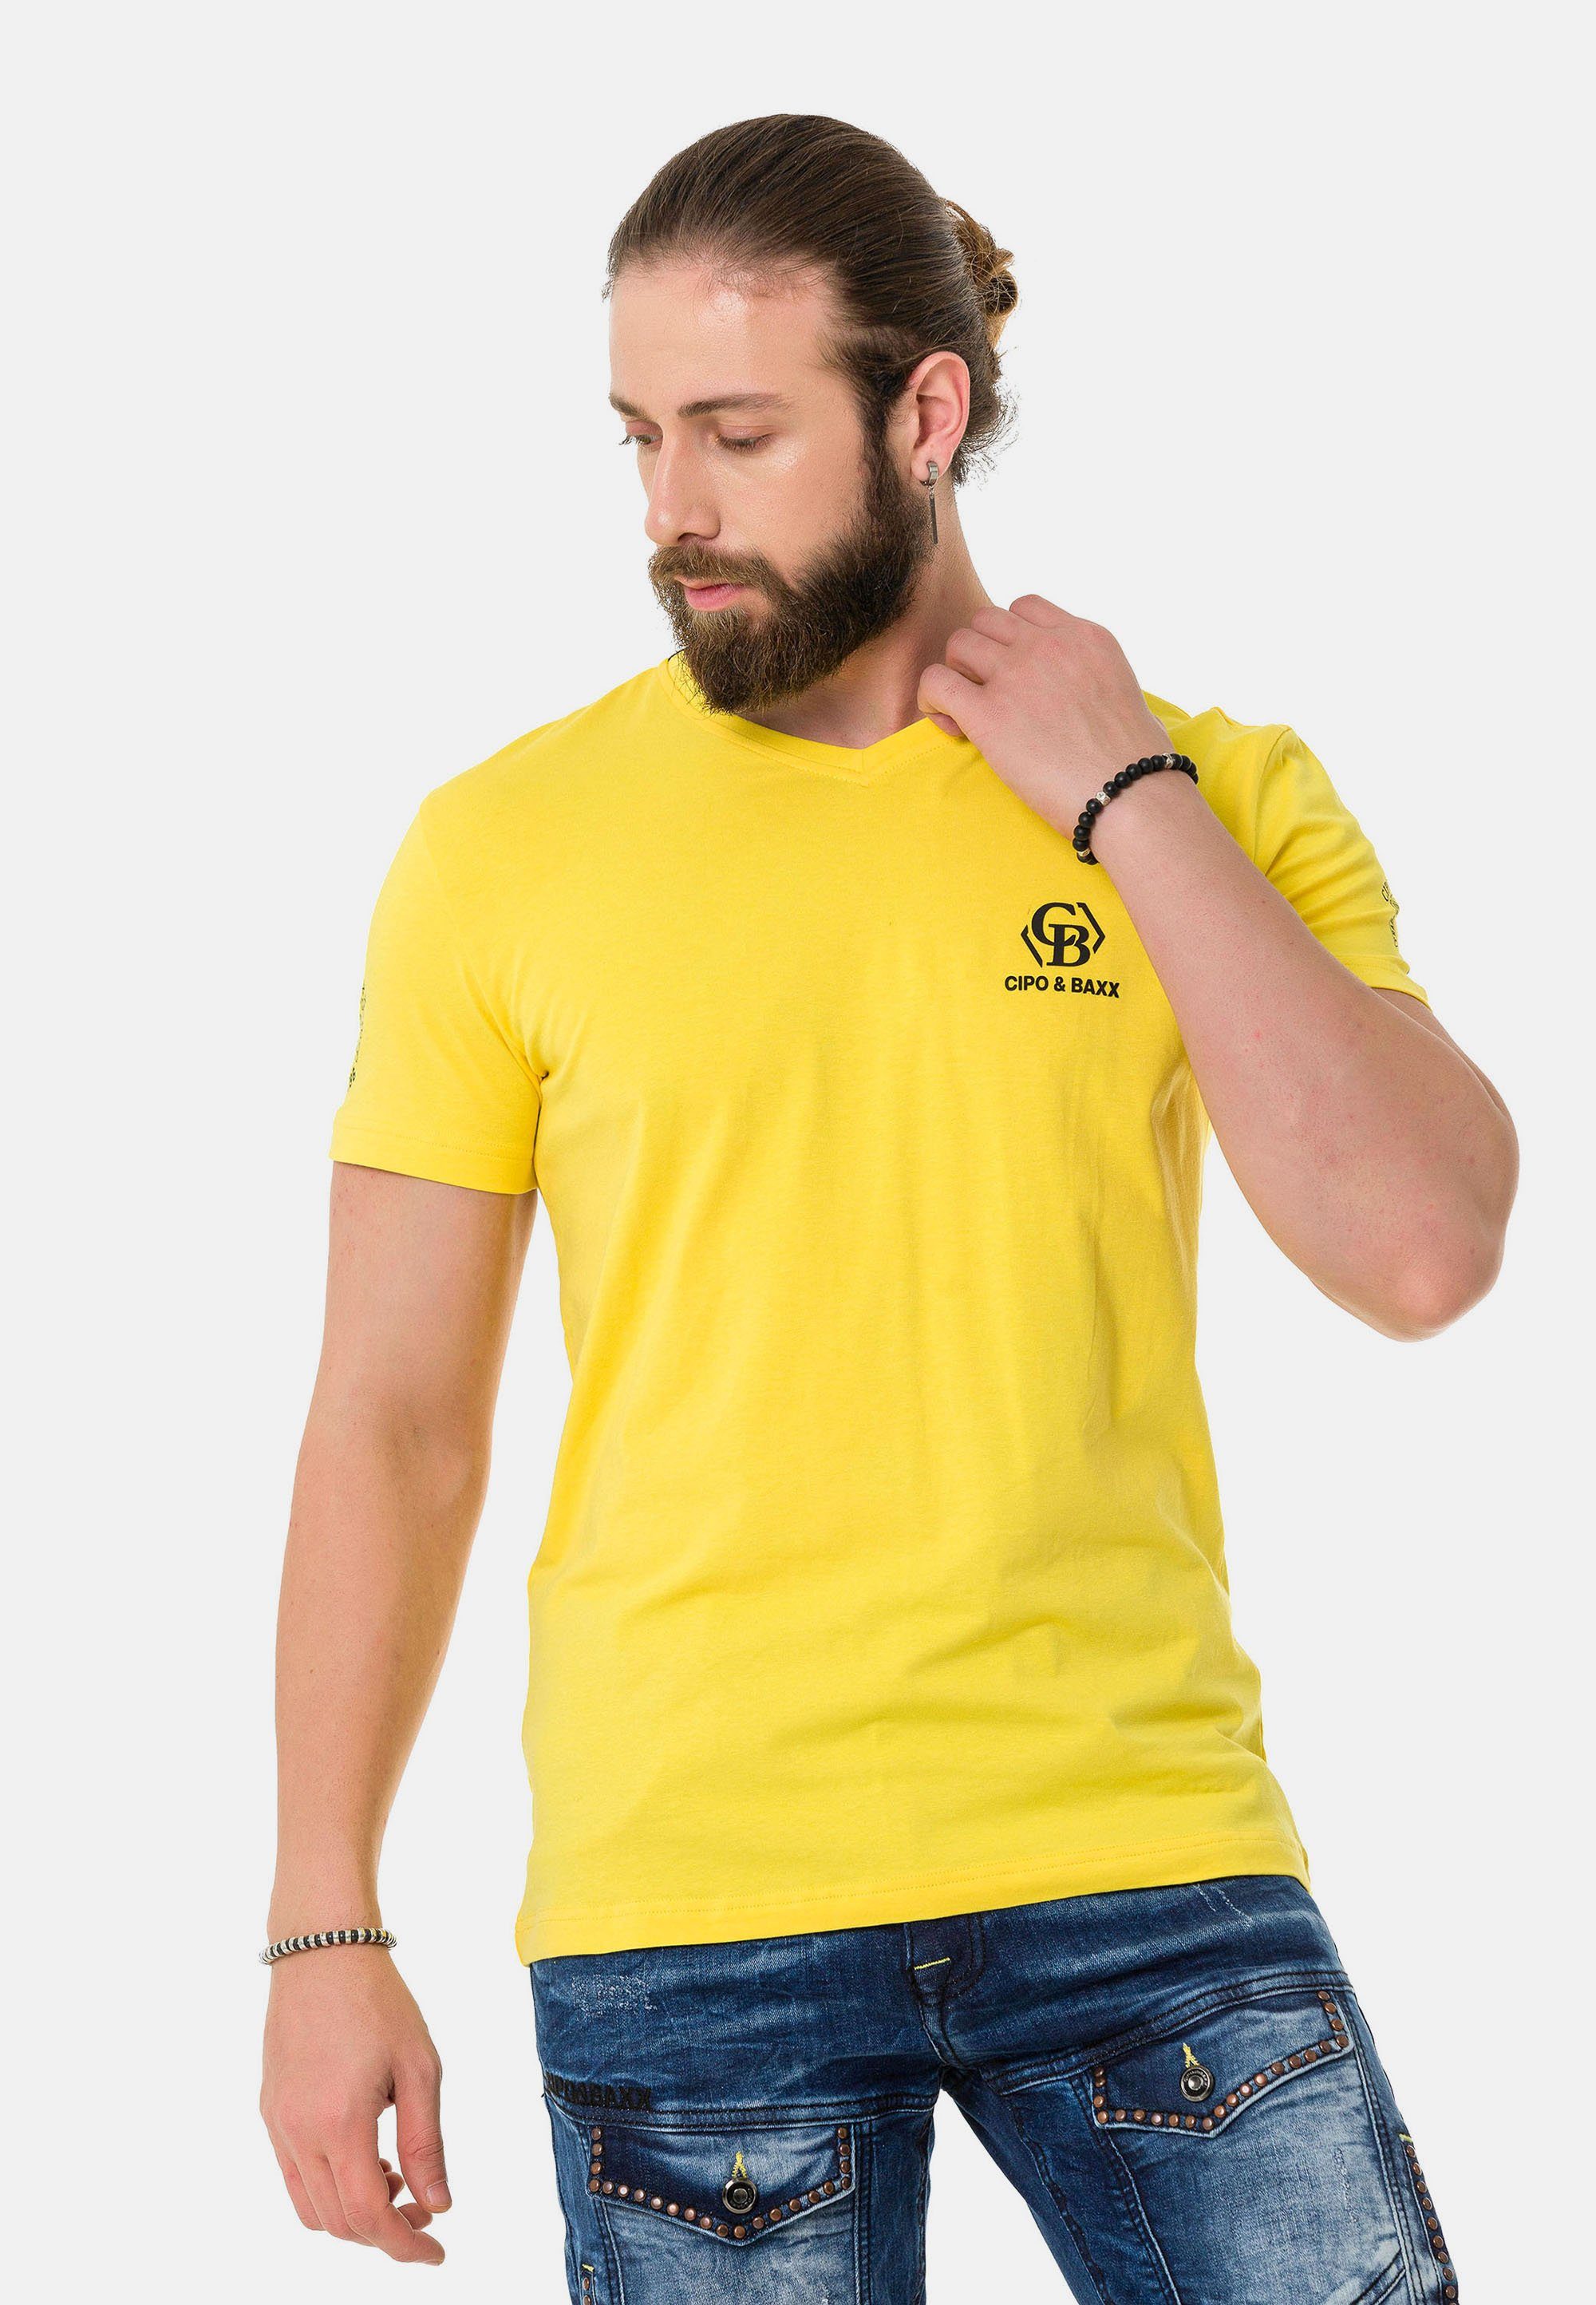 & mit Baxx Cipo T-Shirt Markenlogos dezenten gelb